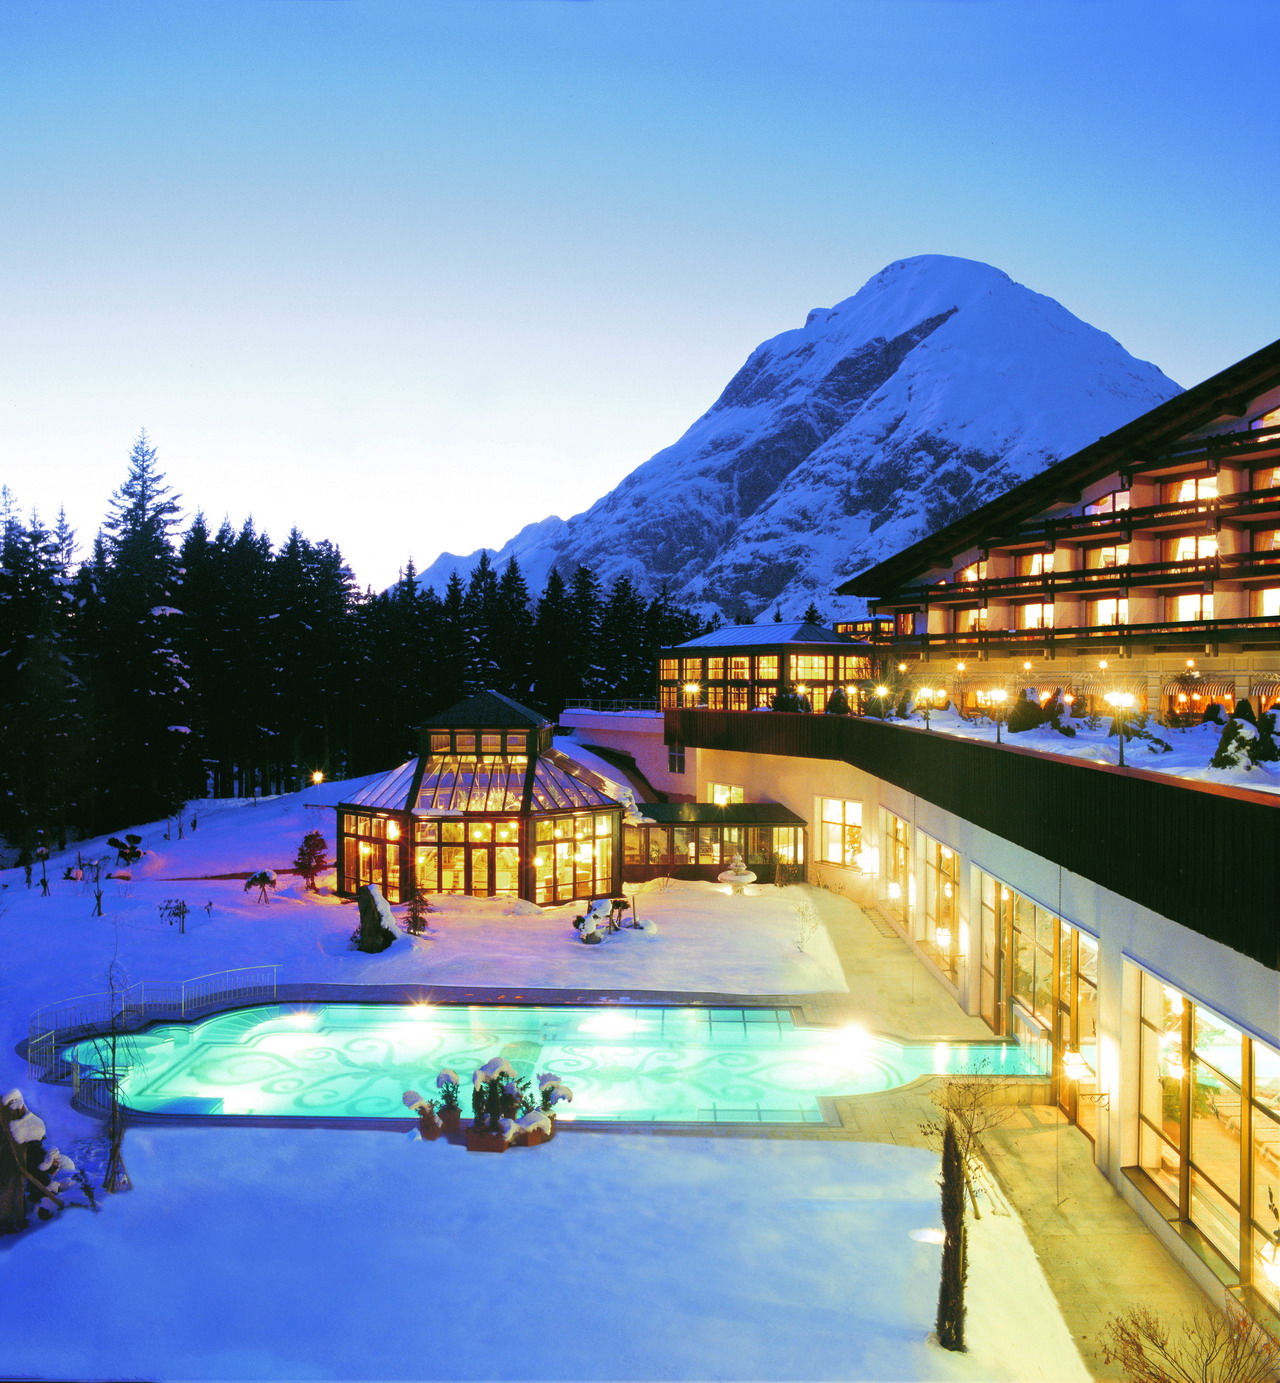 Austria per l’Italia Hotels chiude il 2010 in positivo